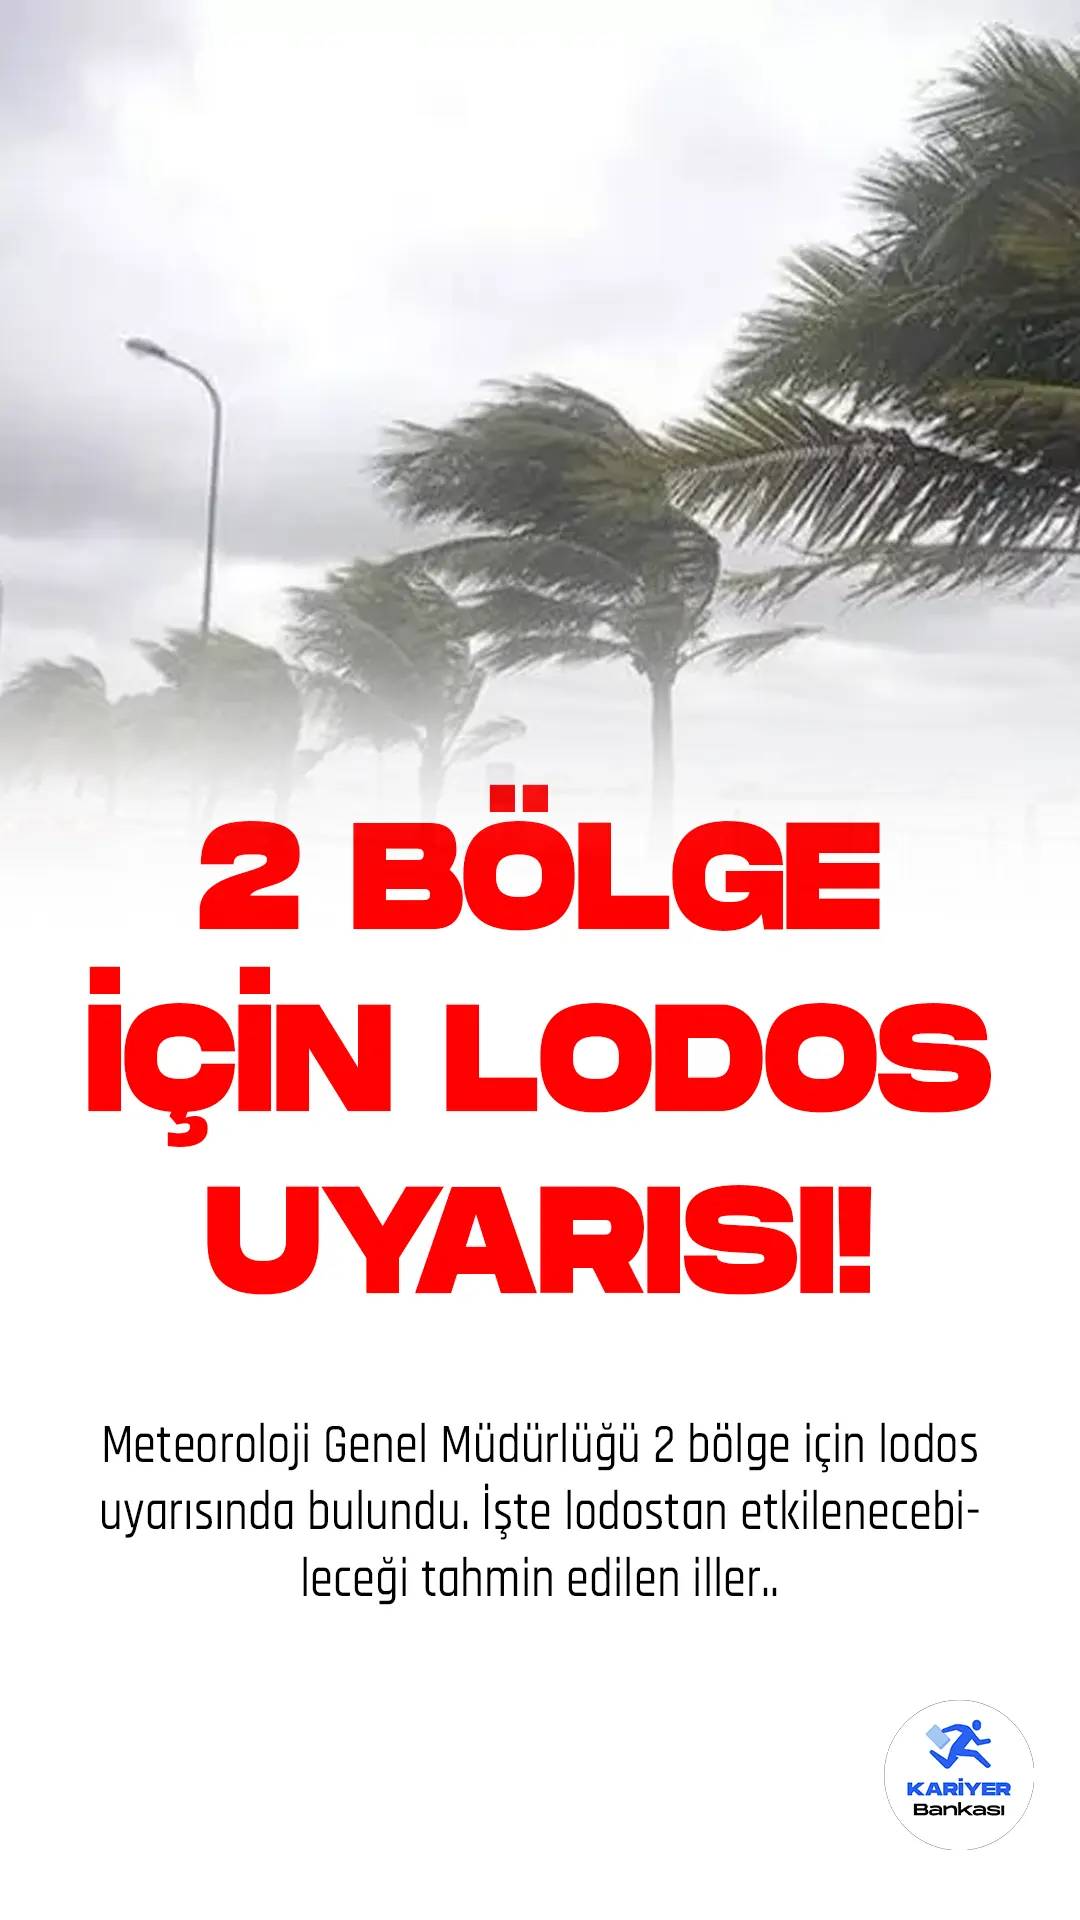 Meteoroloji Genel Müdürlüğü, Marmara ve Ege bölgeleri için lodos uyarısında bulundu.